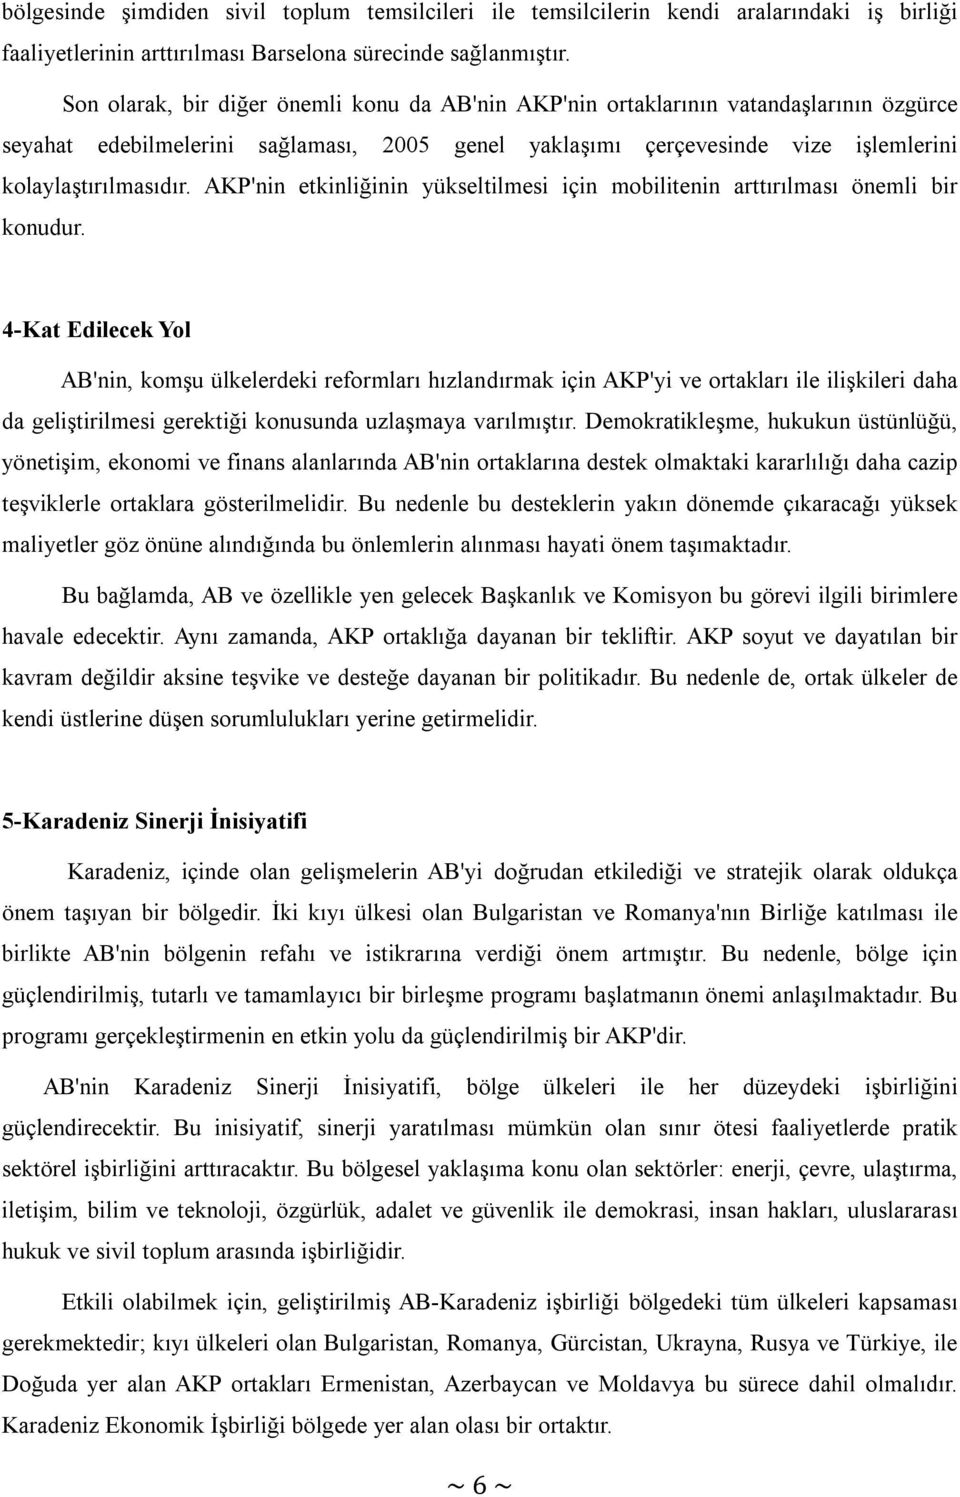 AKP'nin etkinliğinin yükseltilmesi için mobilitenin arttırılması önemli bir konudur.